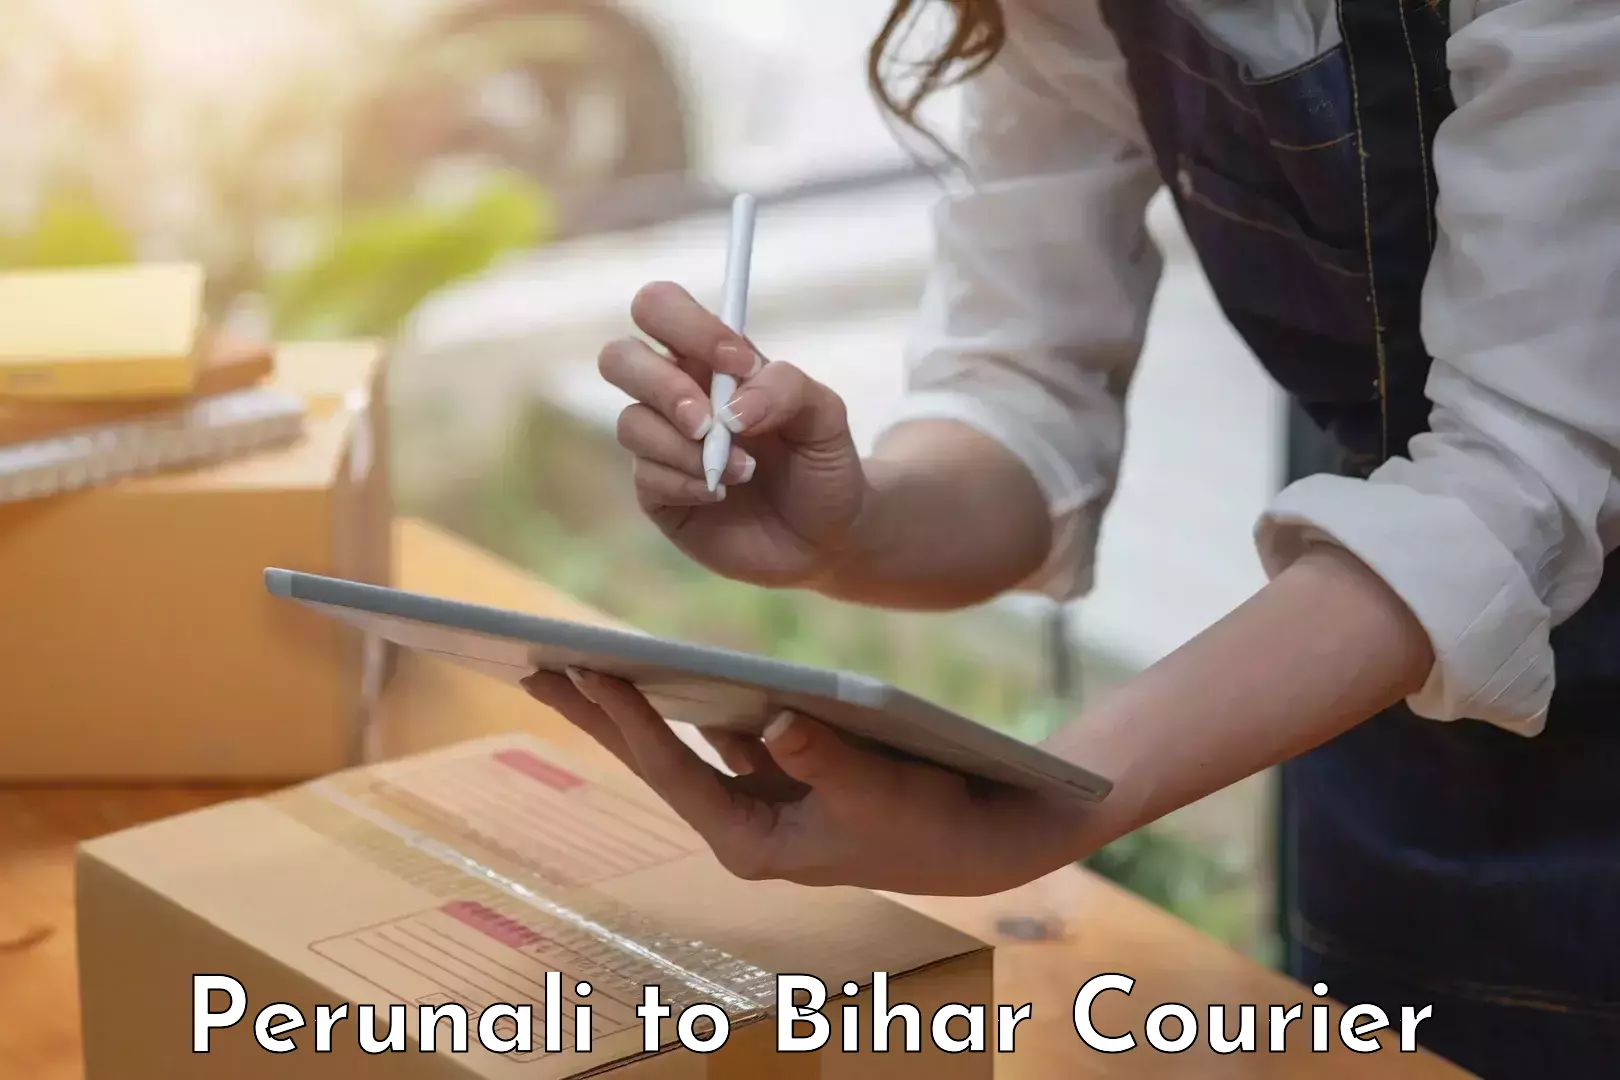 Furniture transport experts Perunali to Bihar